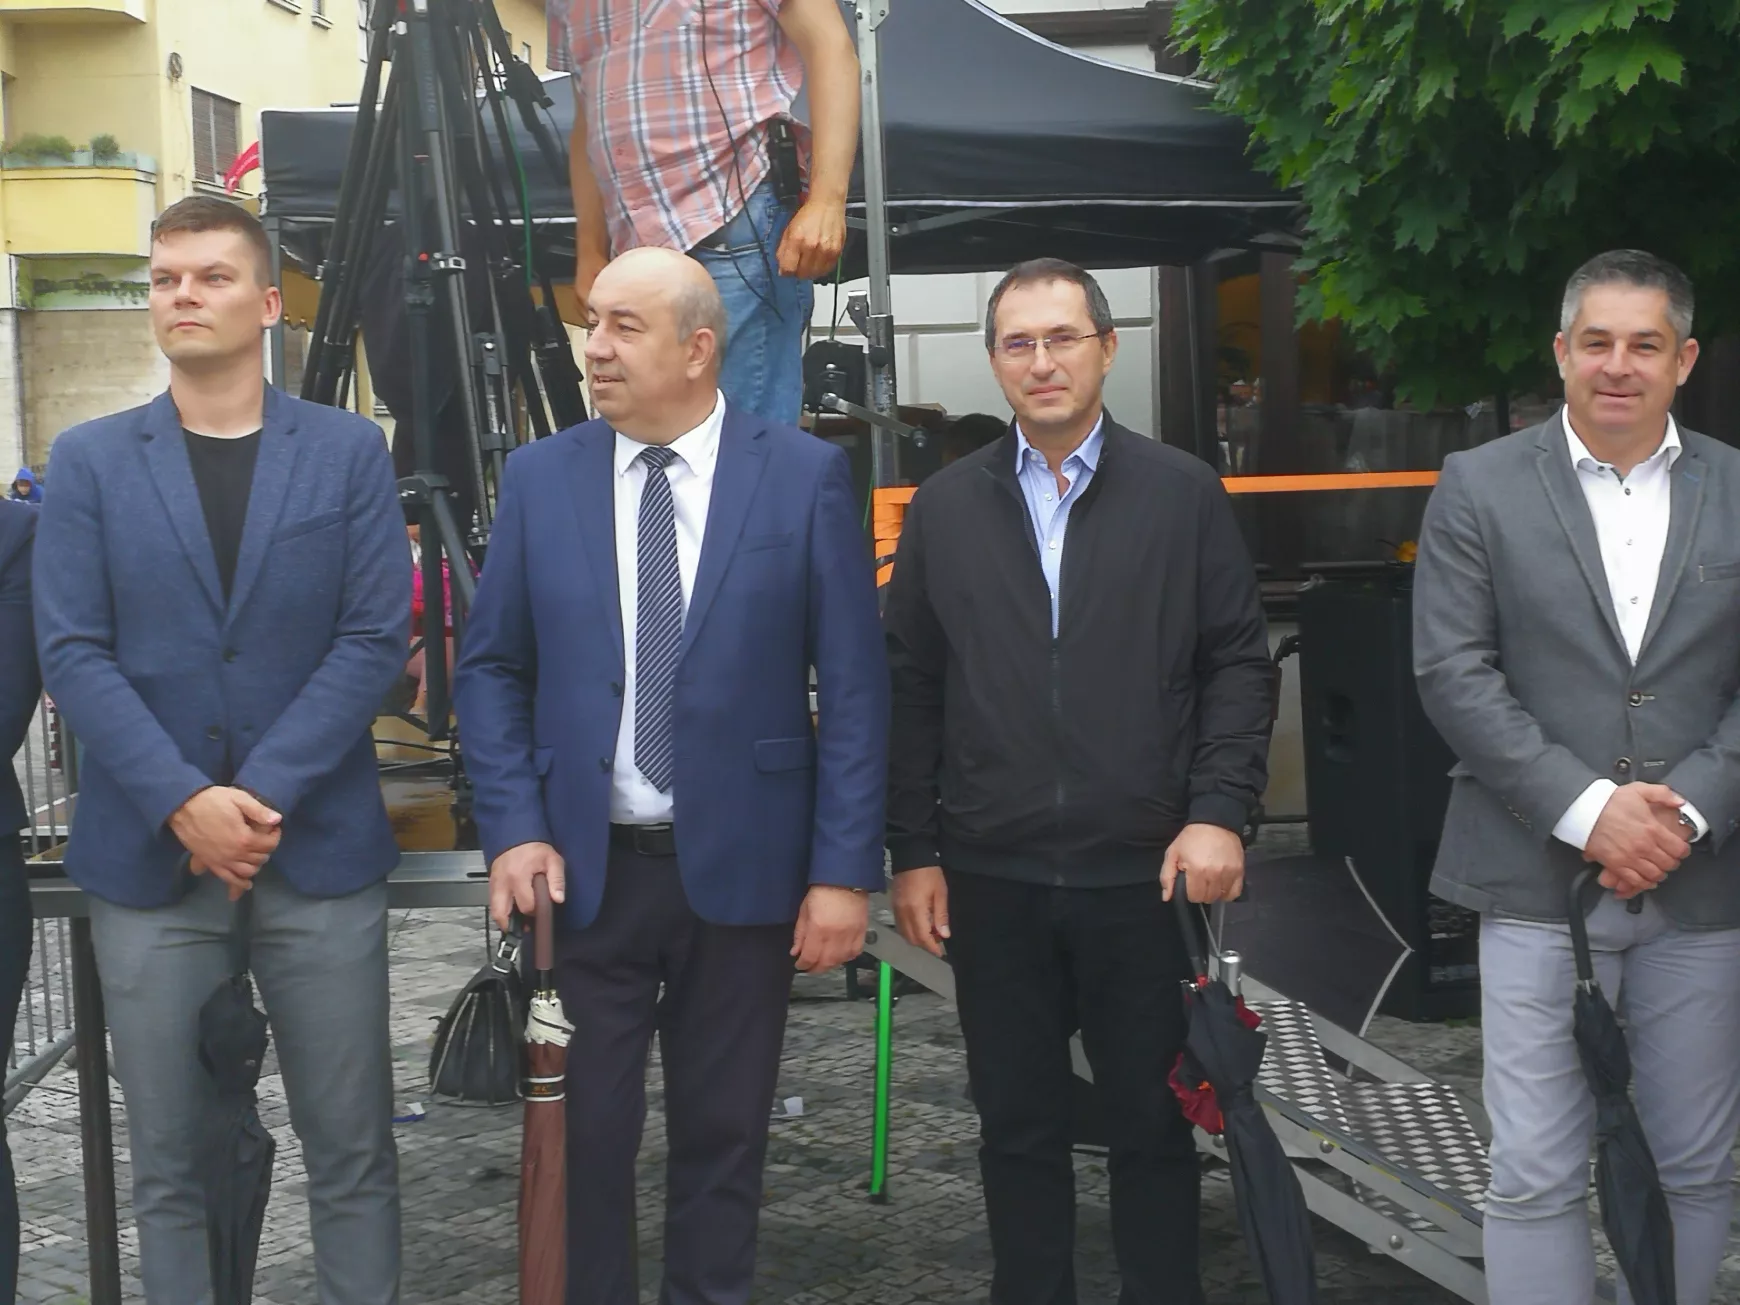  Az eső sem hiúsította meg a magyar közösség erősítését szolgáló Összetartozás Táncát KÉPEKKEL